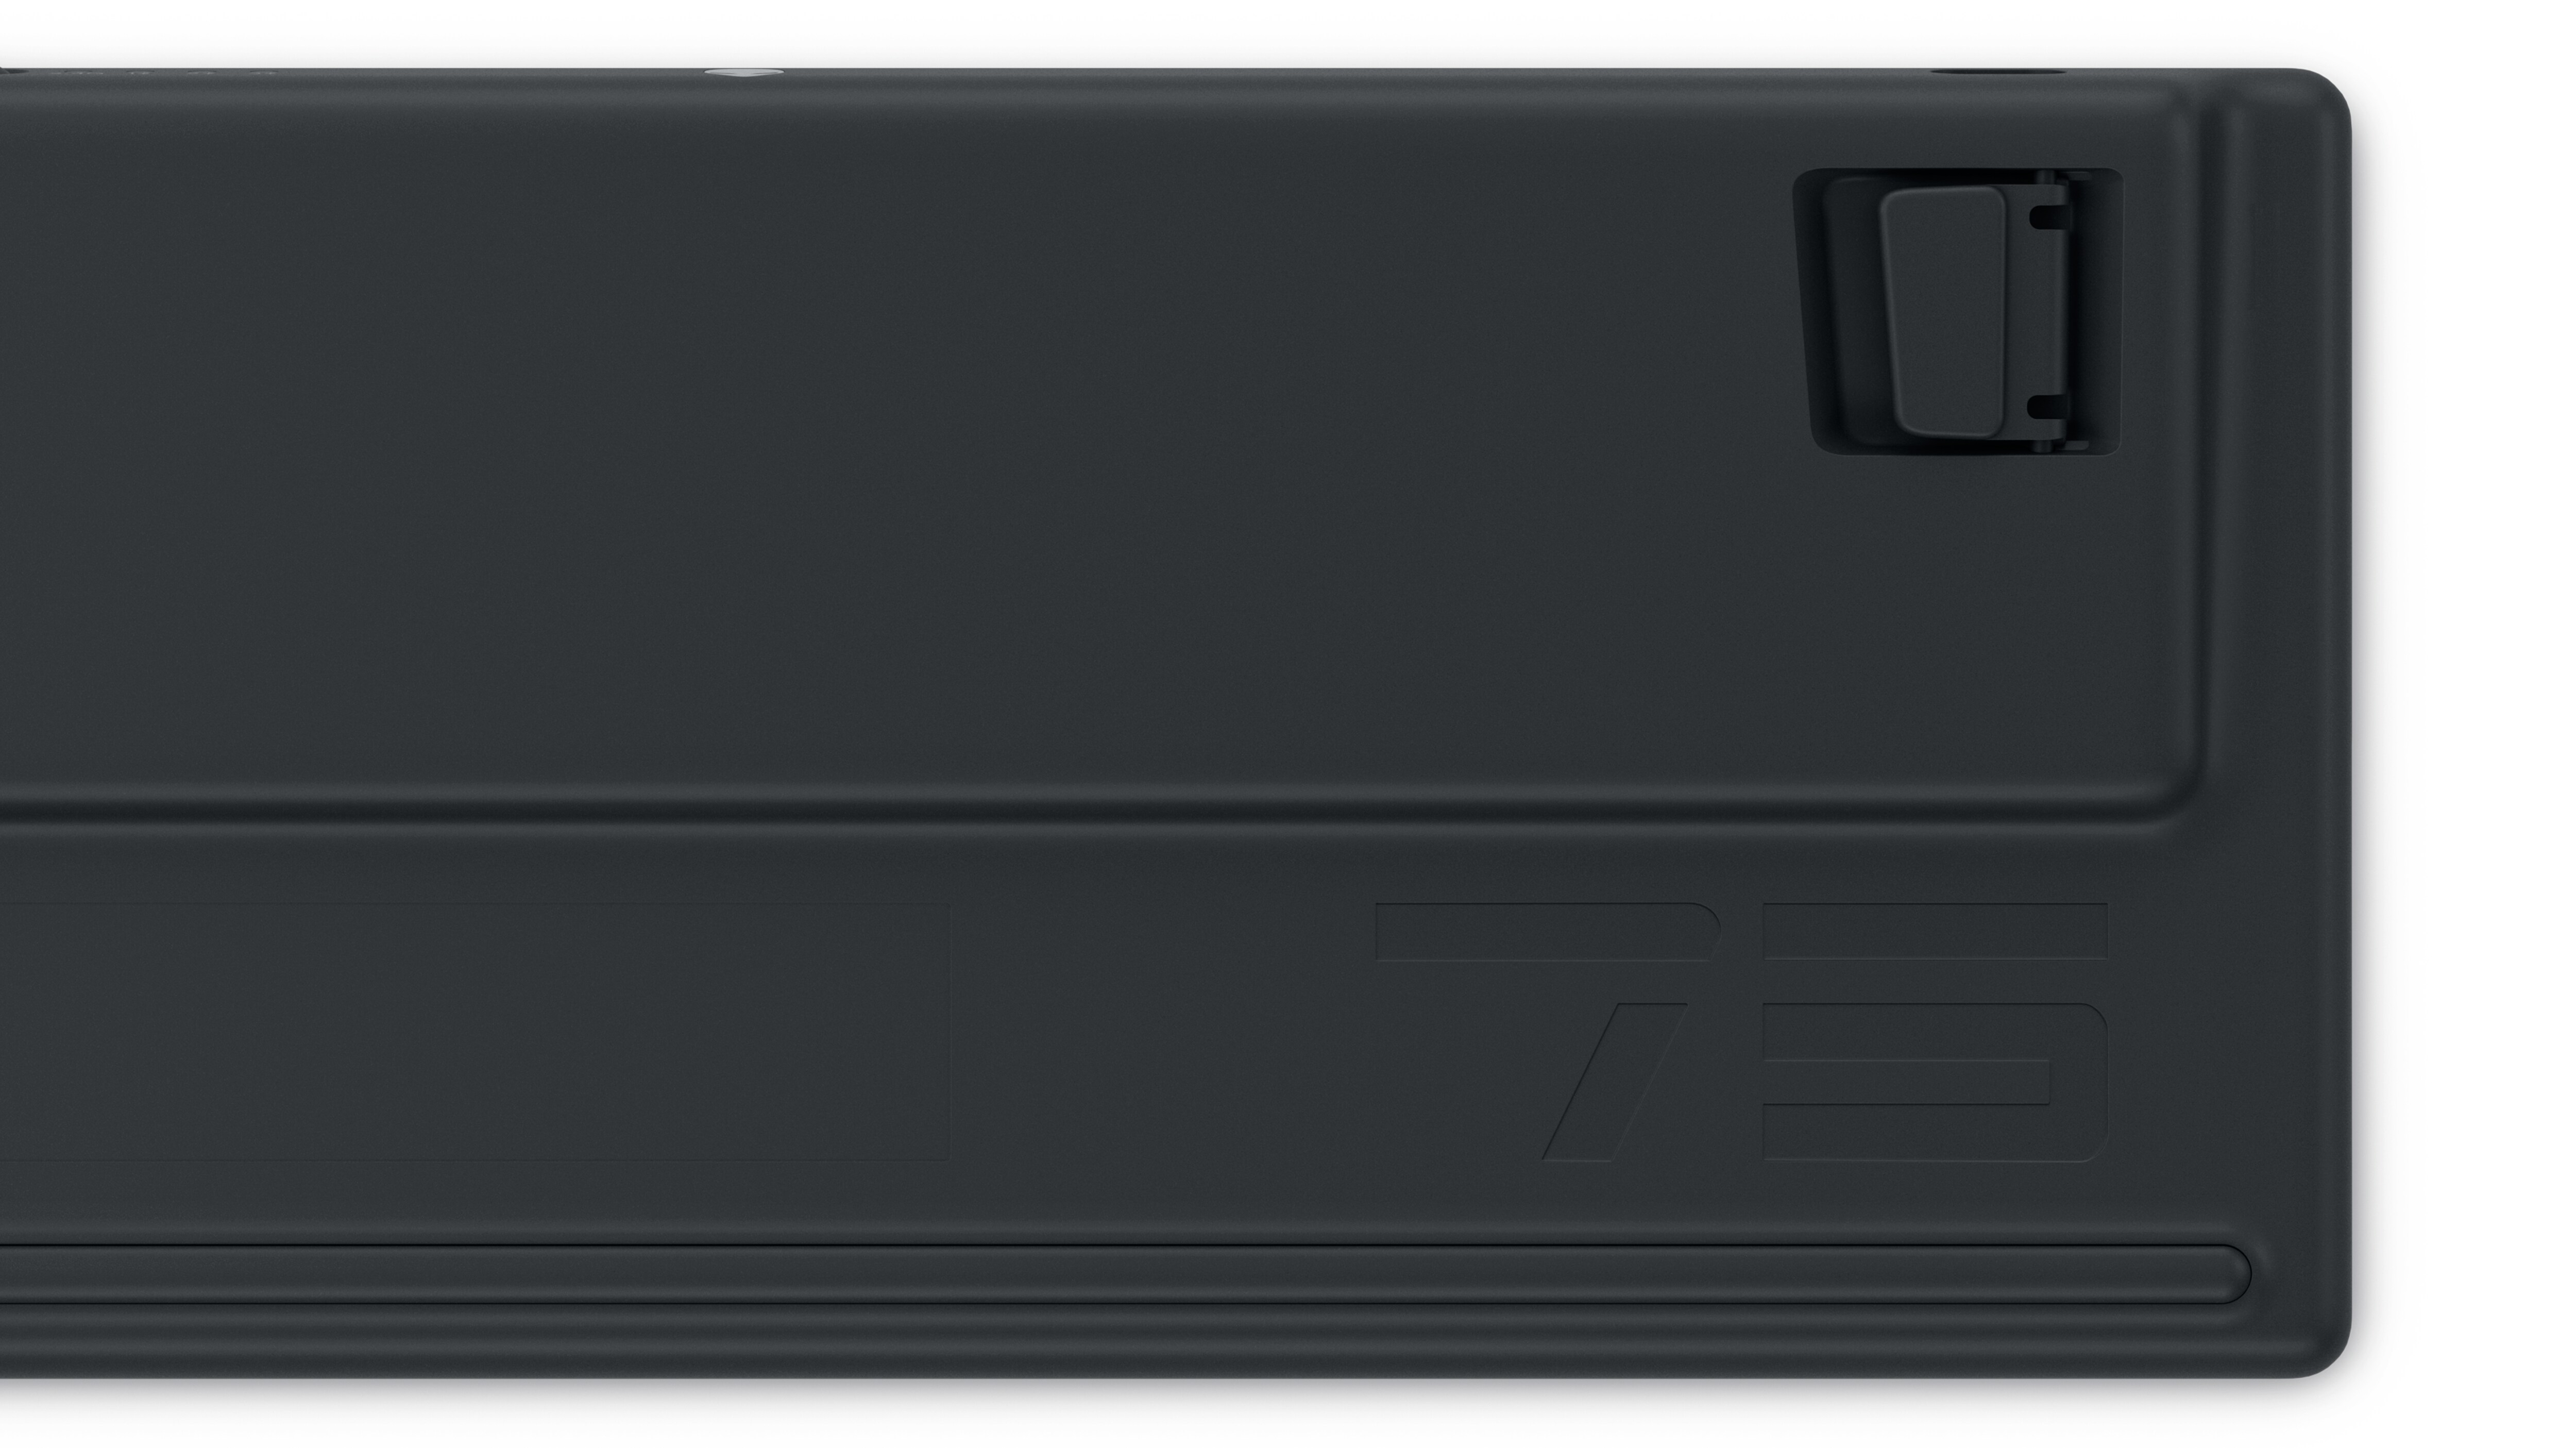 Dell Alienware Pro trådlöst speltangentbord visar baksidan av produkten.